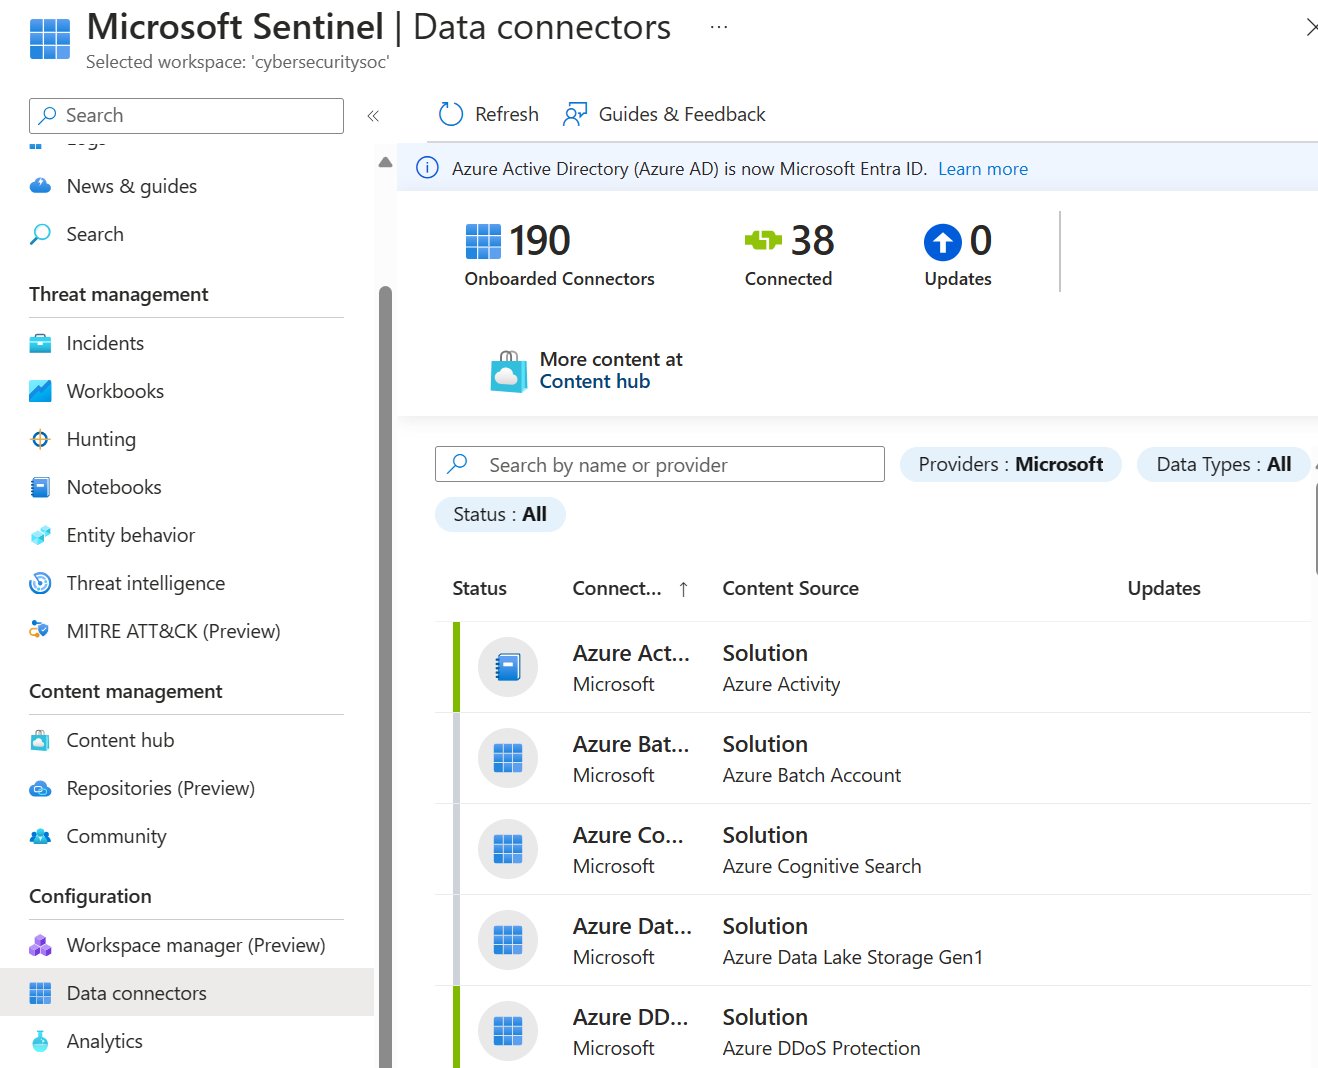 Capture d’écran de la page Connecteurs de données dans Microsoft Sentinel, affichant une liste de connecteurs disponibles.